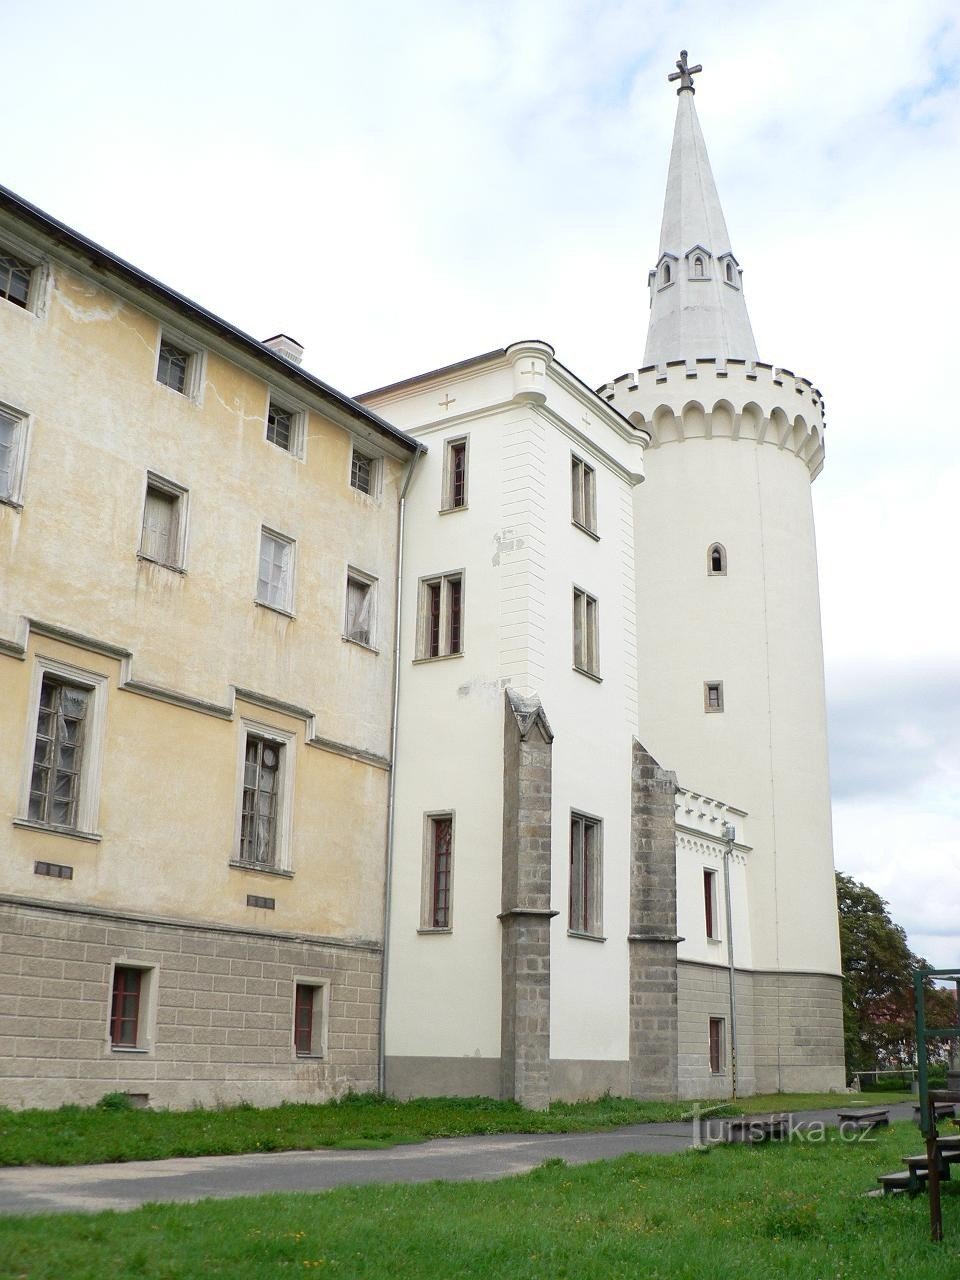 Борський замок, вежа